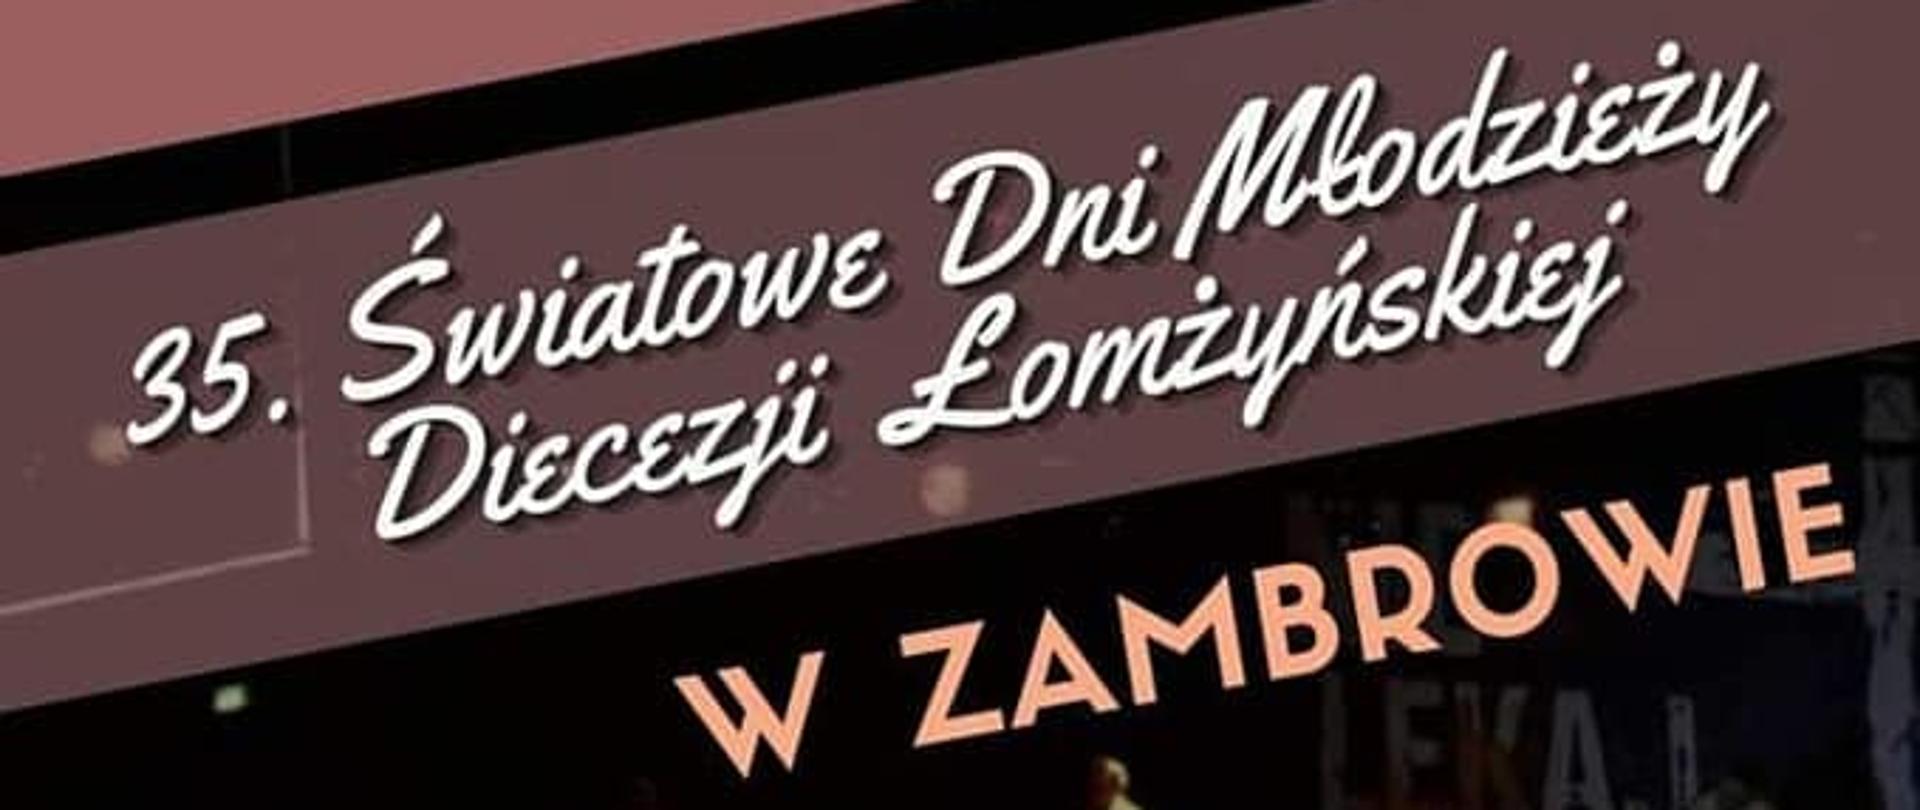 obrazek przedstawia plakat ŚDM Diecezji Łomżyńskiej